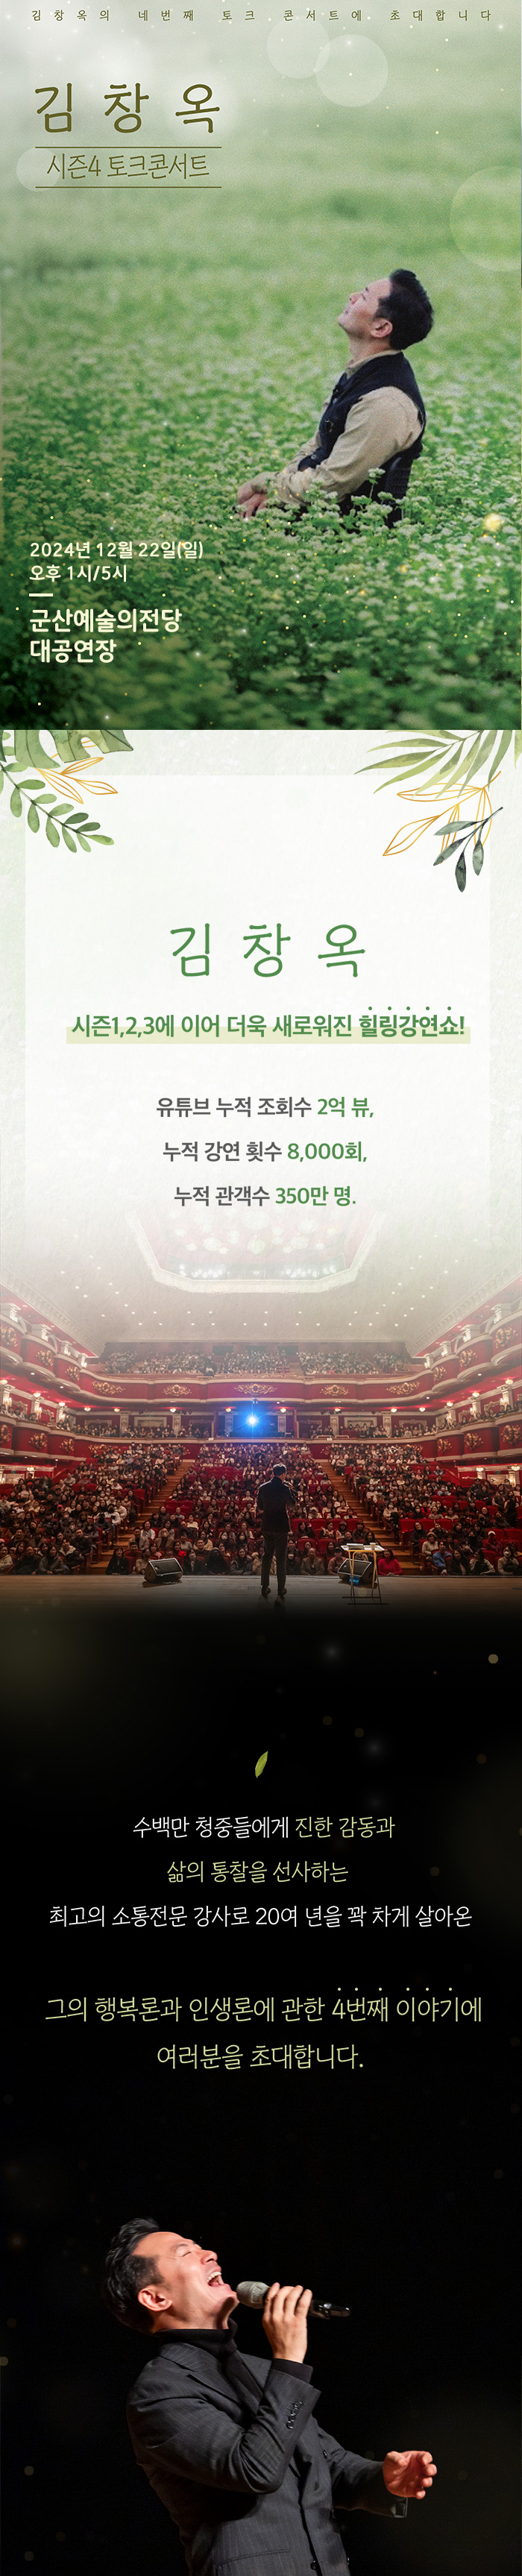 김창옥시즌4 토크콘서트